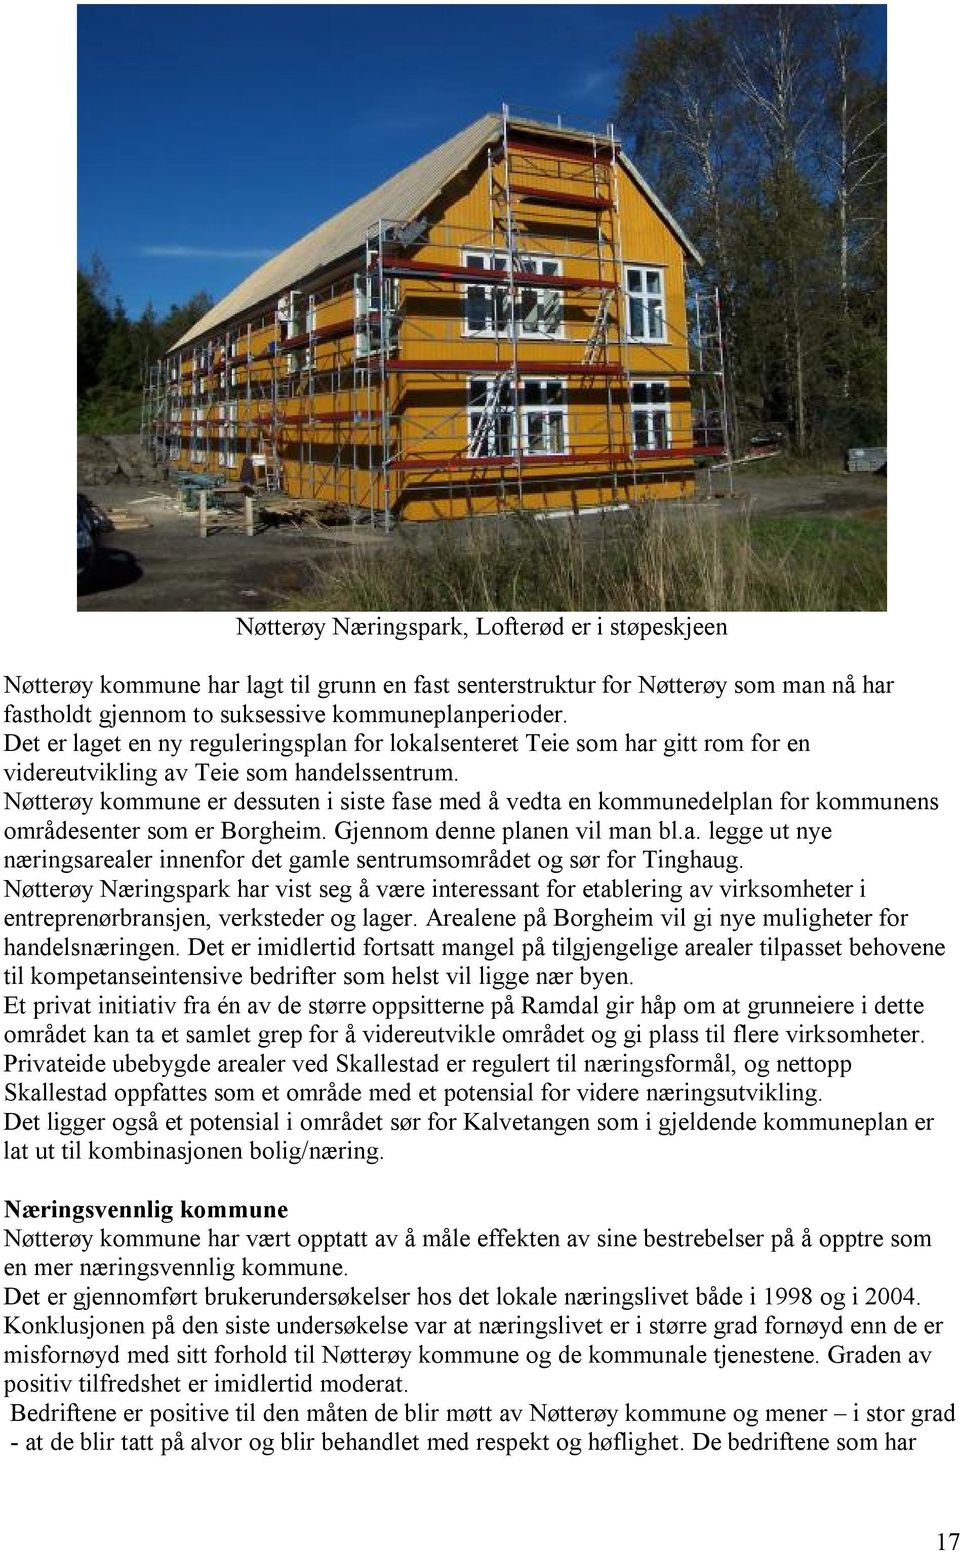 Nøtterøy kommune er dessuten i siste fase med å vedta en kommunedelplan for kommunens områdesenter som er Borgheim. Gjennom denne planen vil man bl.a. legge ut nye næringsarealer innenfor det gamle sentrumsområdet og sør for Tinghaug.